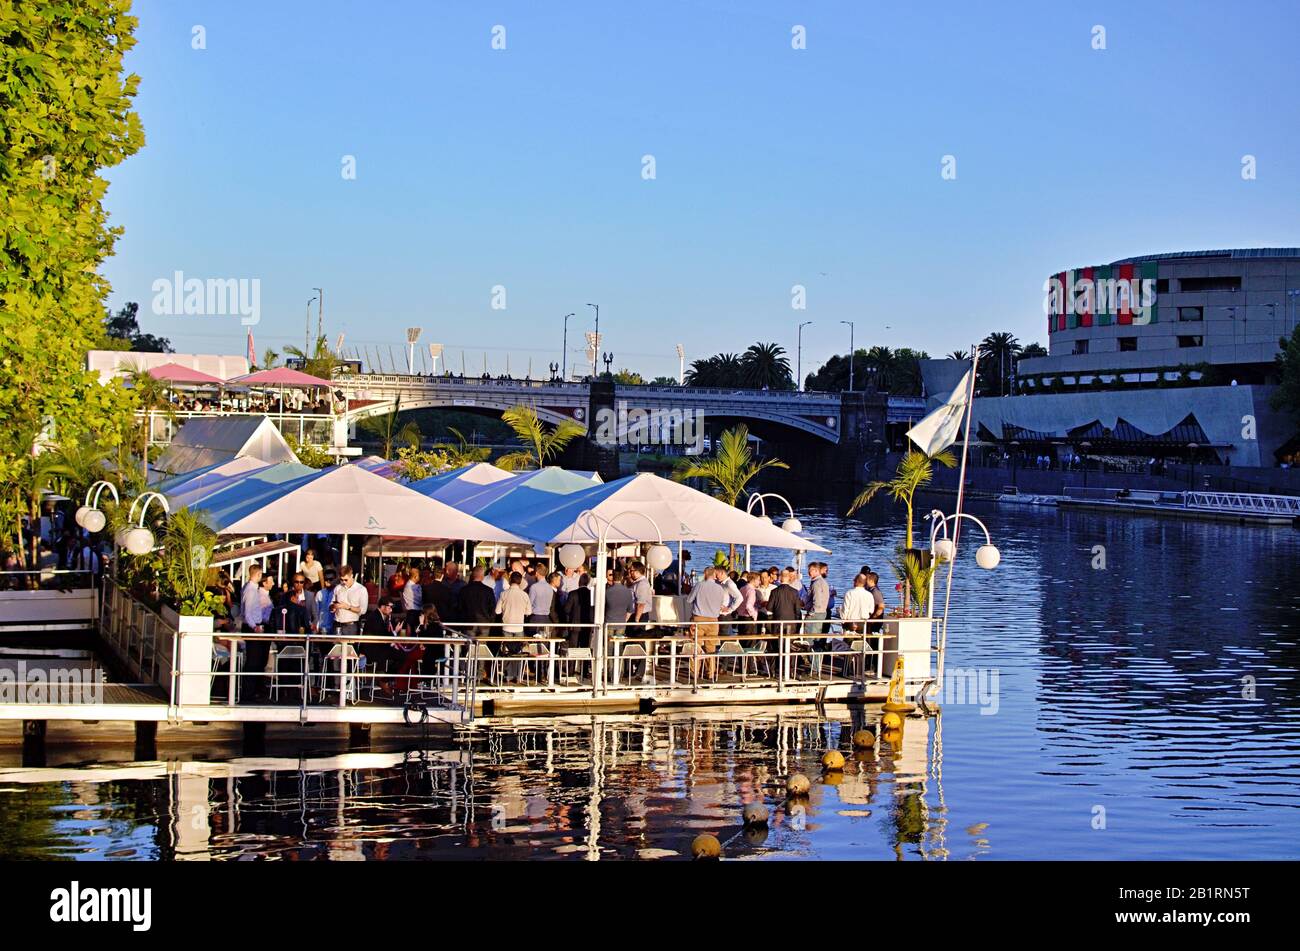 Soirée d'événements sociaux au bar flottant Armory Afloat sur la Yarra River, Melbourne, Victoria, Australie Banque D'Images